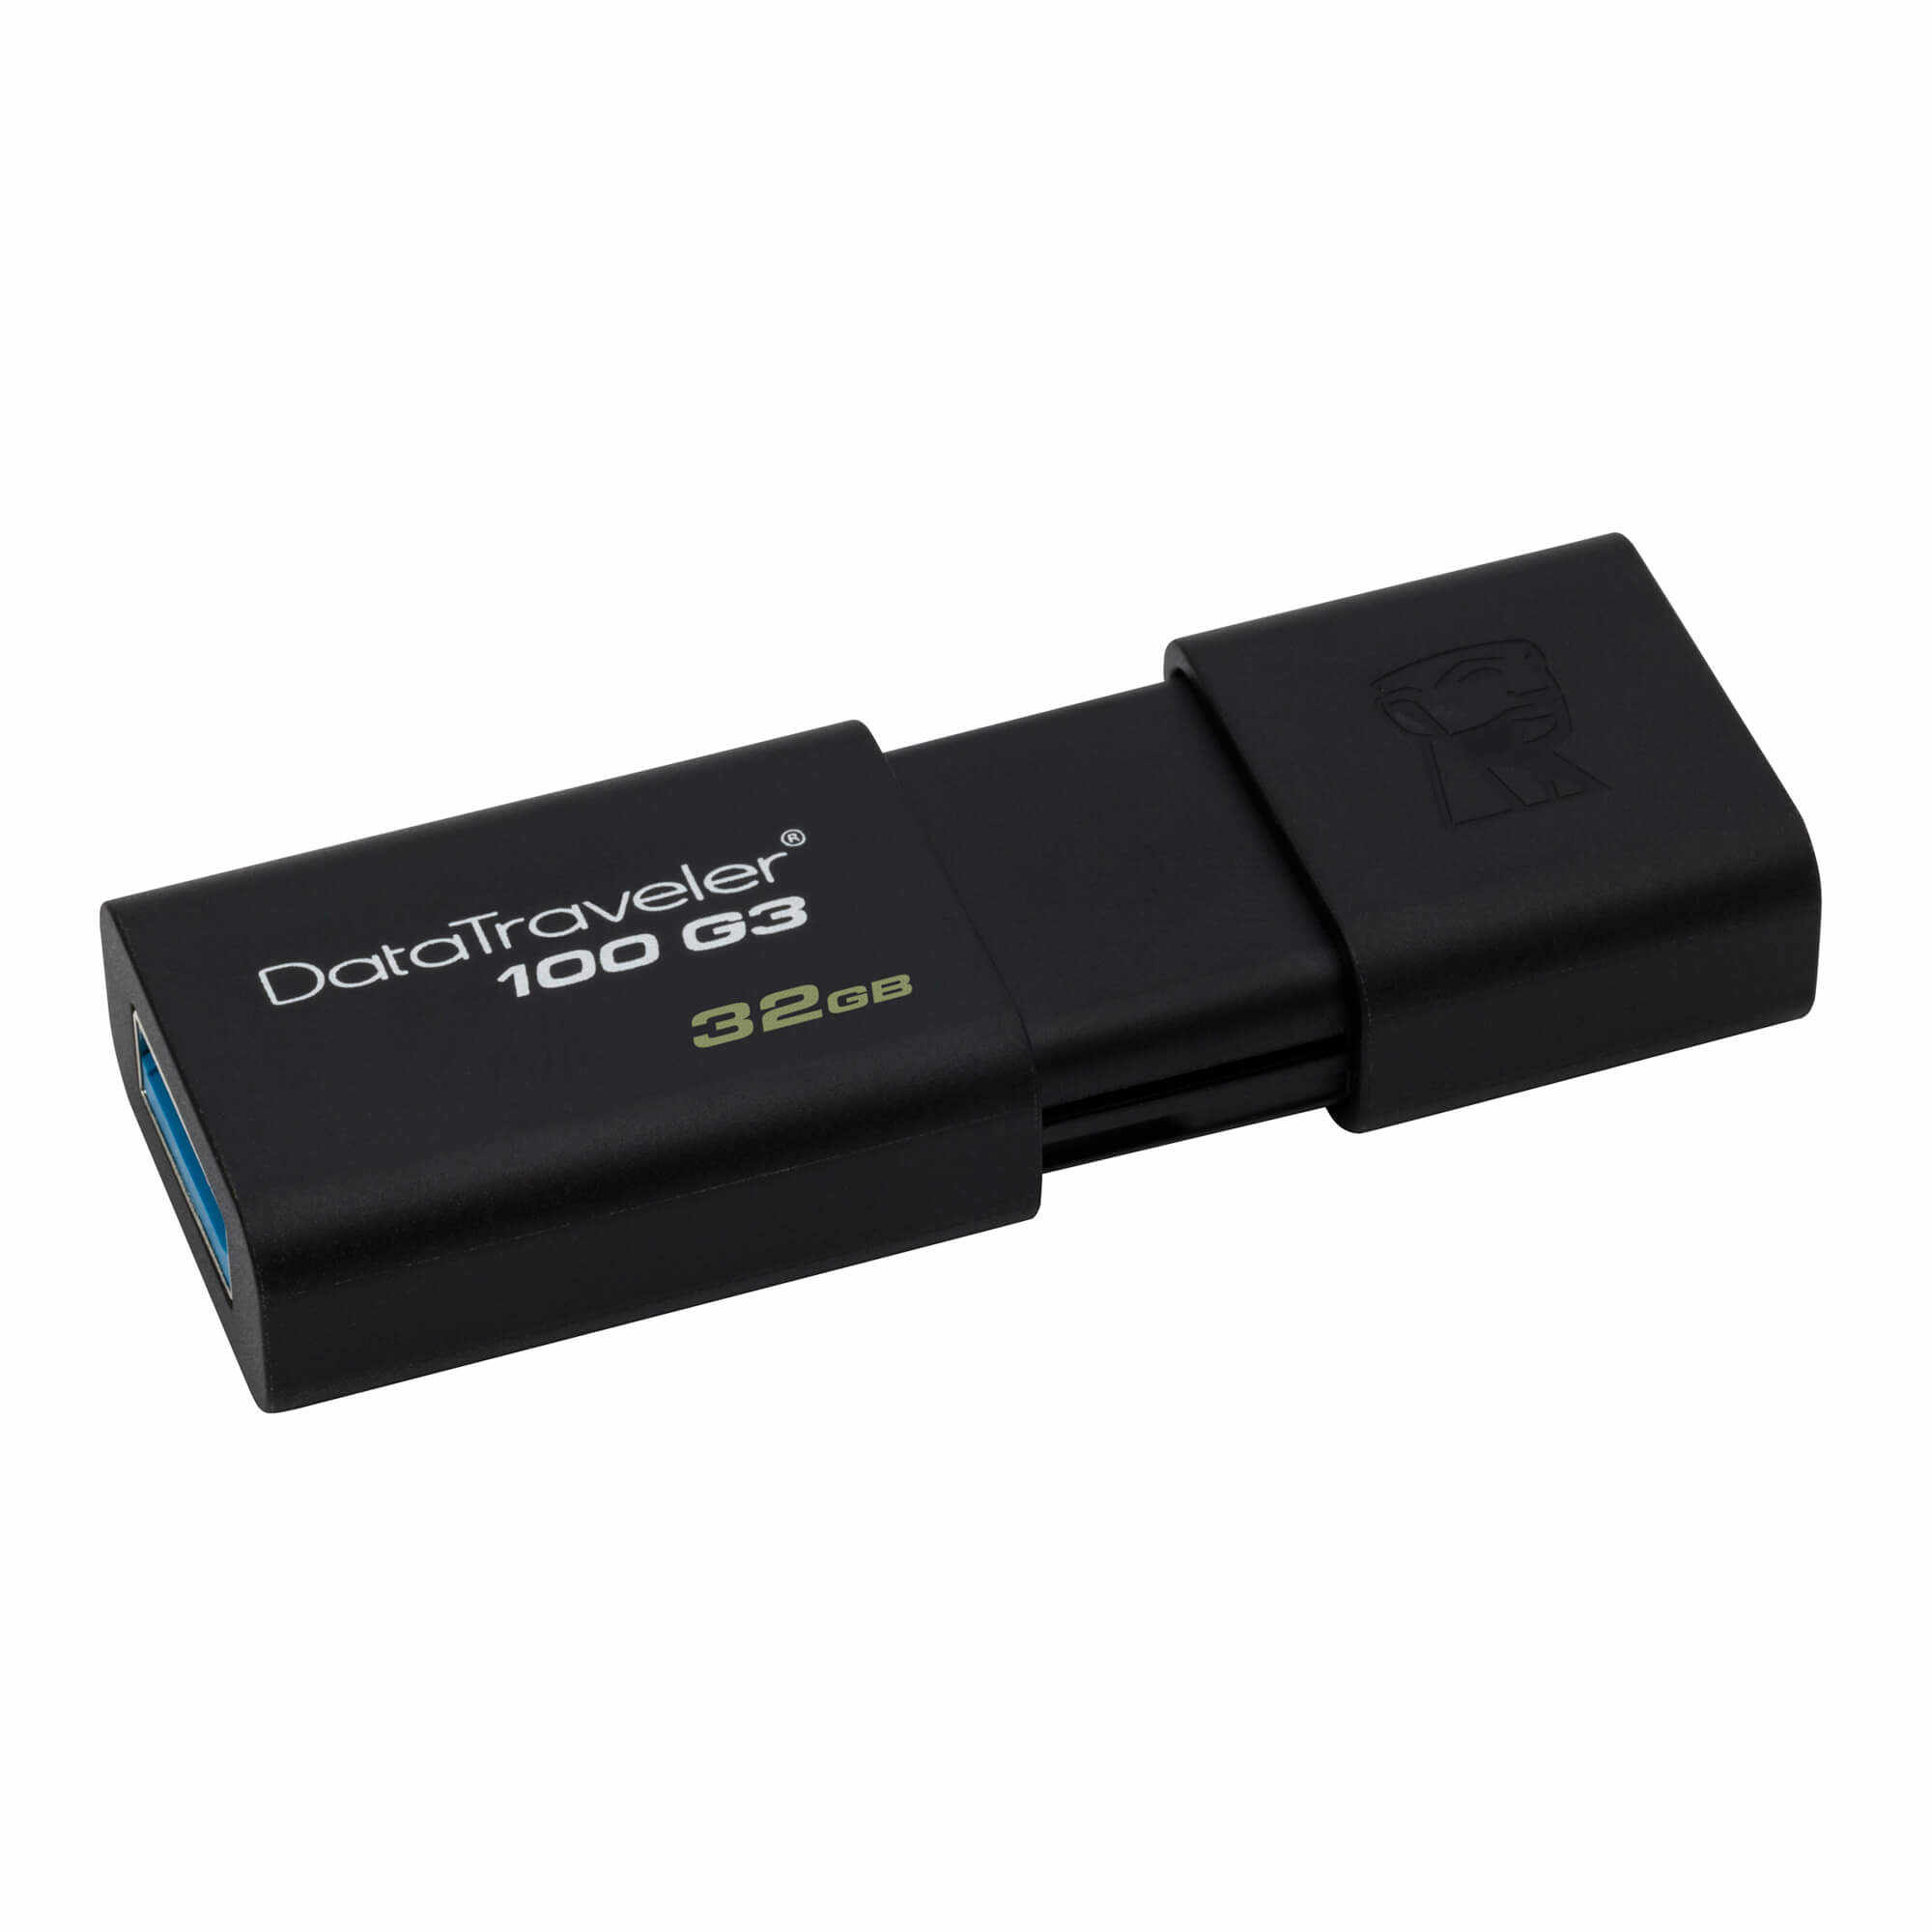 Memorie USB Kingston DataTraveler 100 G3, 32GB, USB 3.0